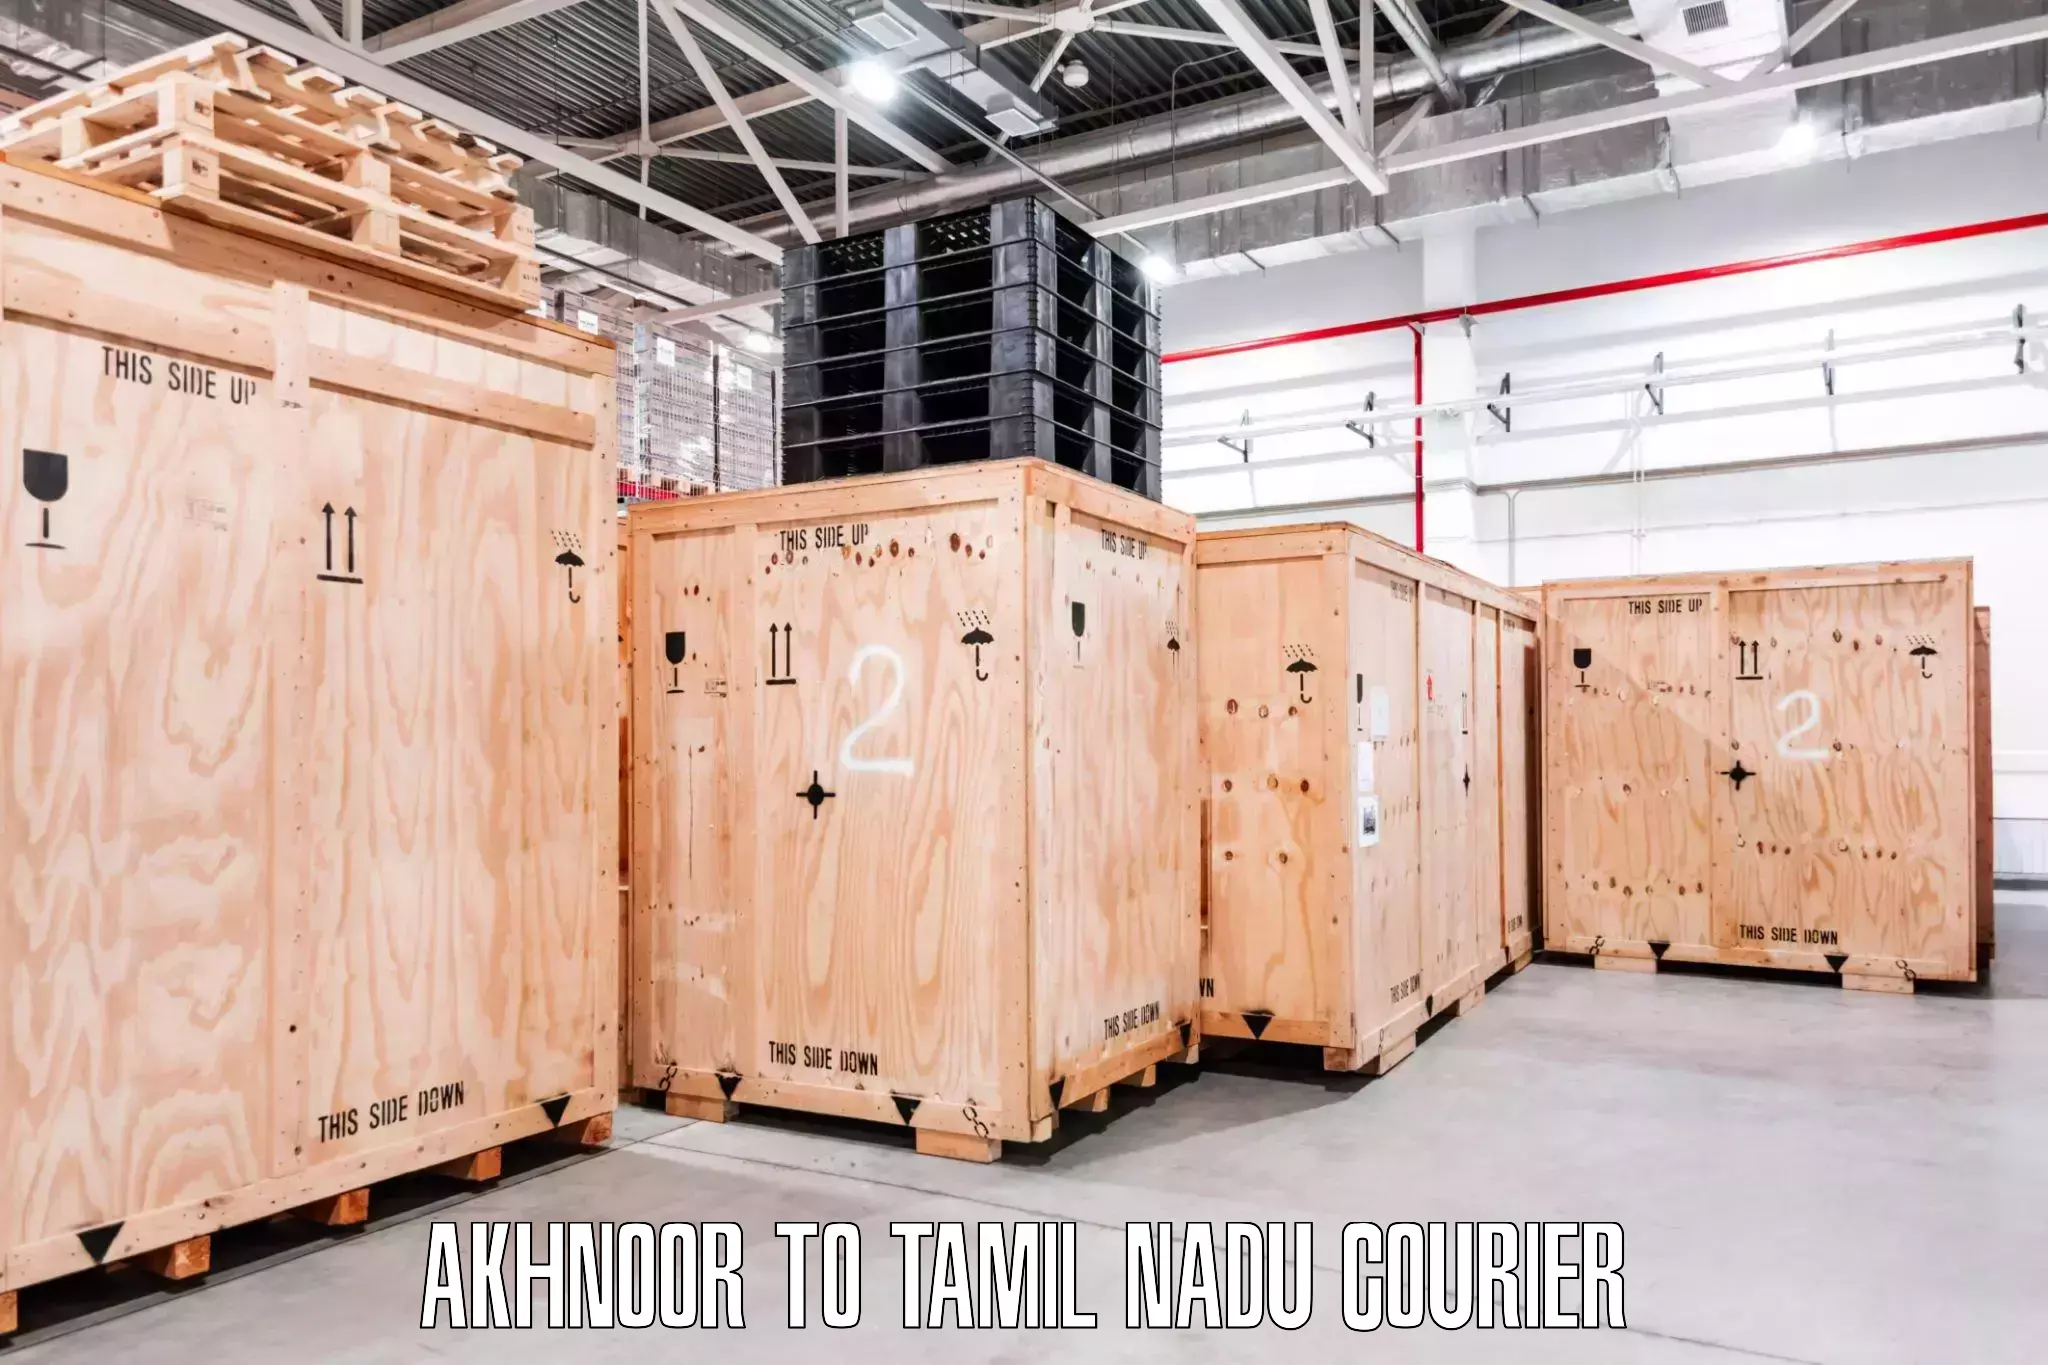 Efficient household movers Akhnoor to Tamil Nadu